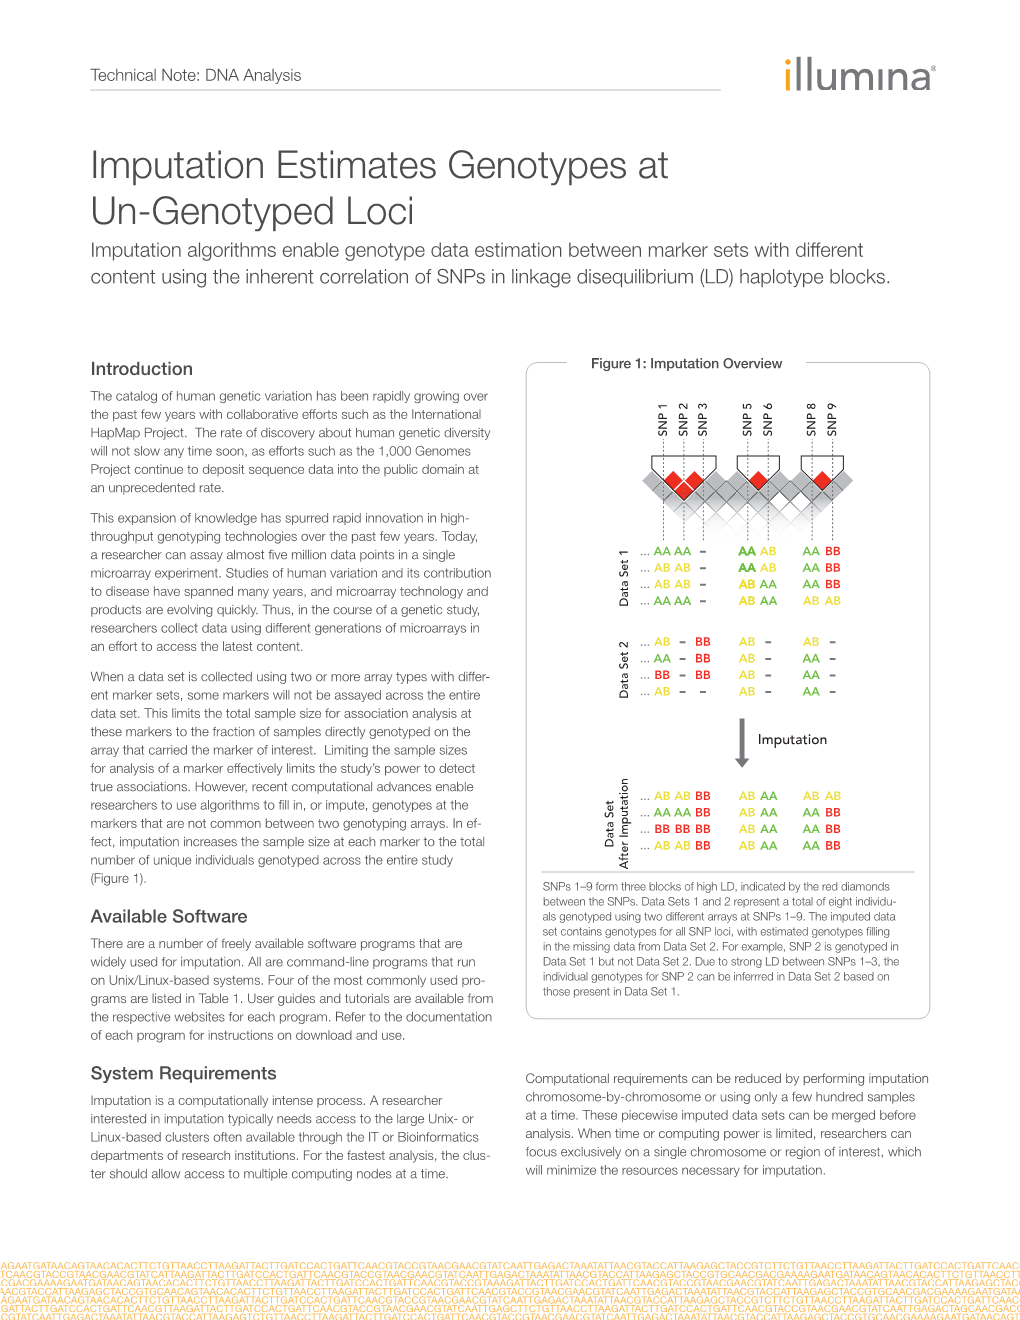 Imputation Estimates Genotypes at Un-Genotyped Loci